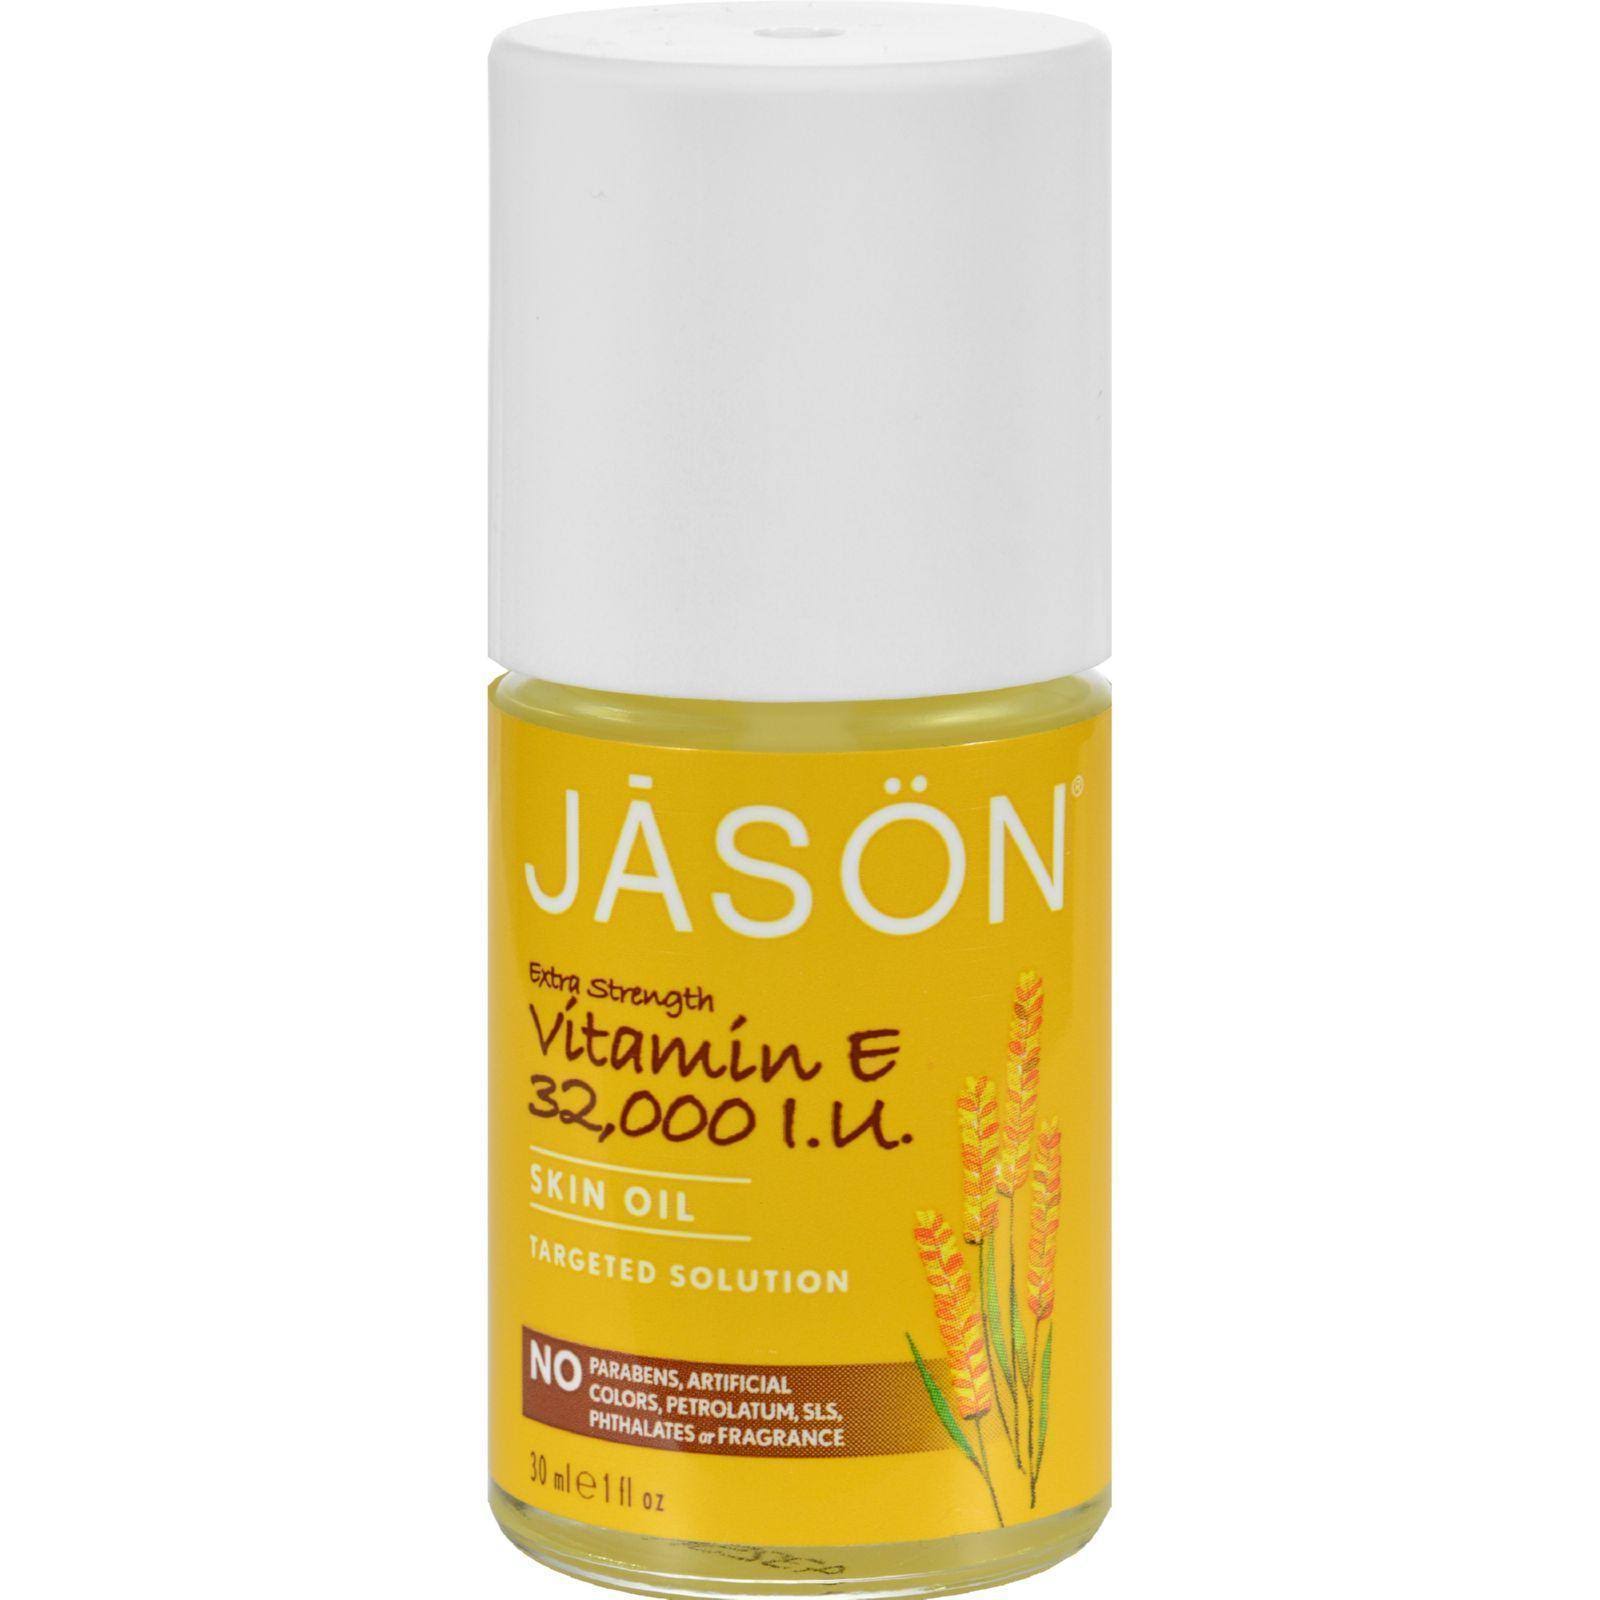 Jason Vitamin E Pure Beauty Oil - 32,000 IU